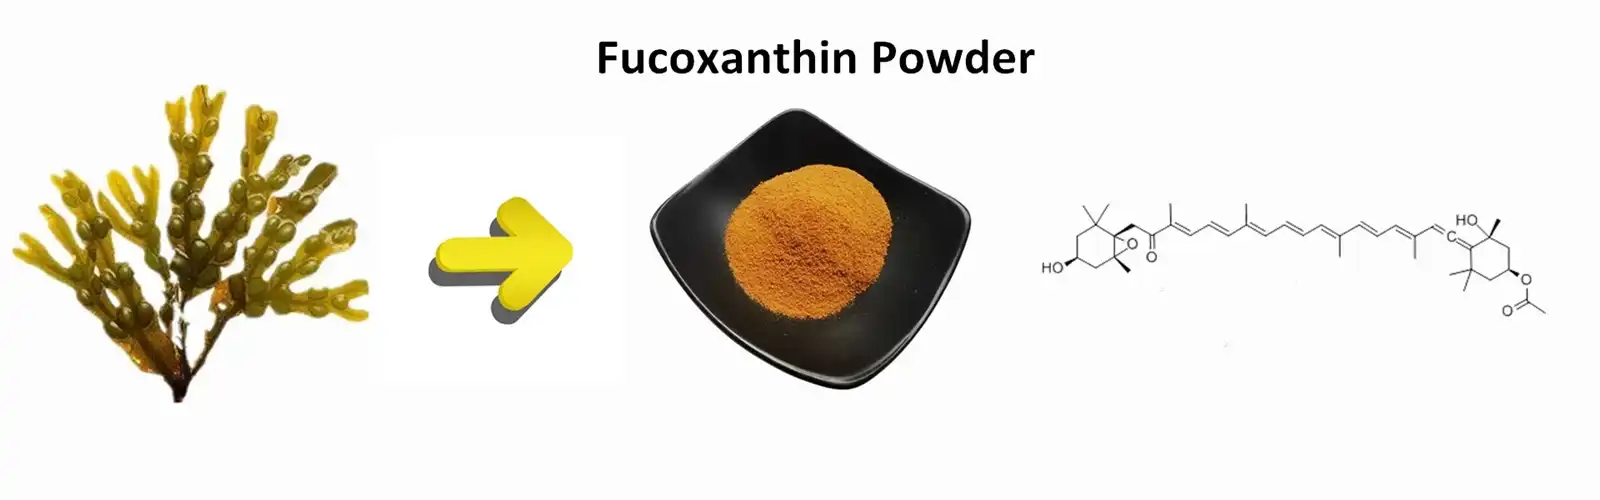 Fucoxanthin Powder